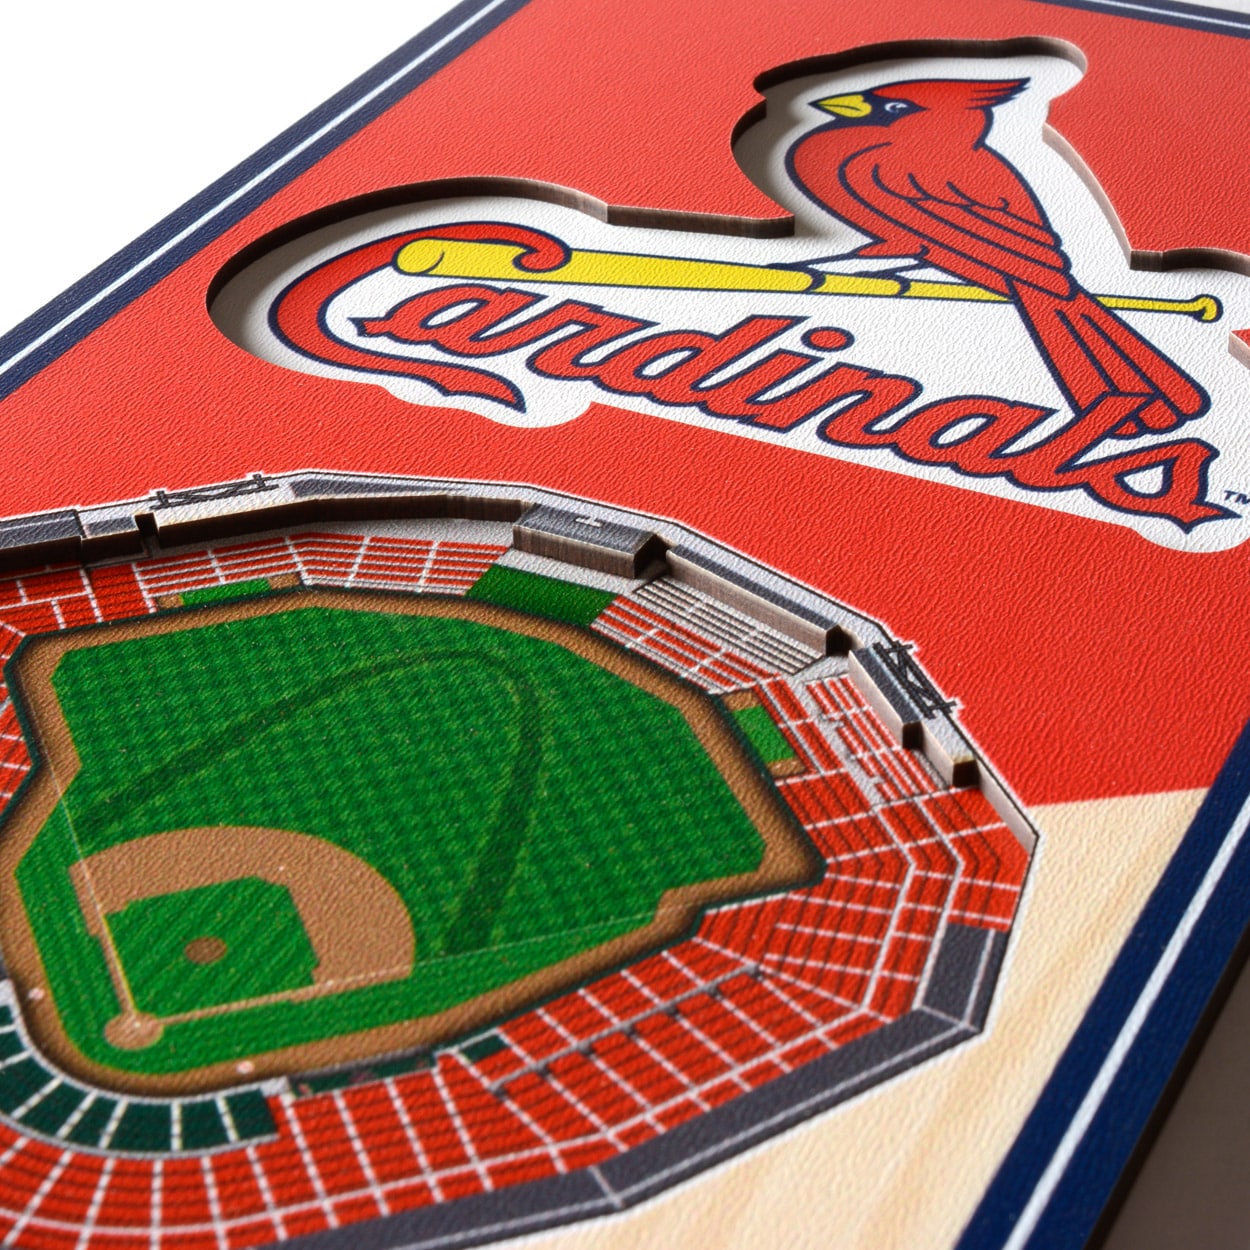 St. Louis Cardinals 25 Layer 25 x 19 StadiumViews 3D Wall Art